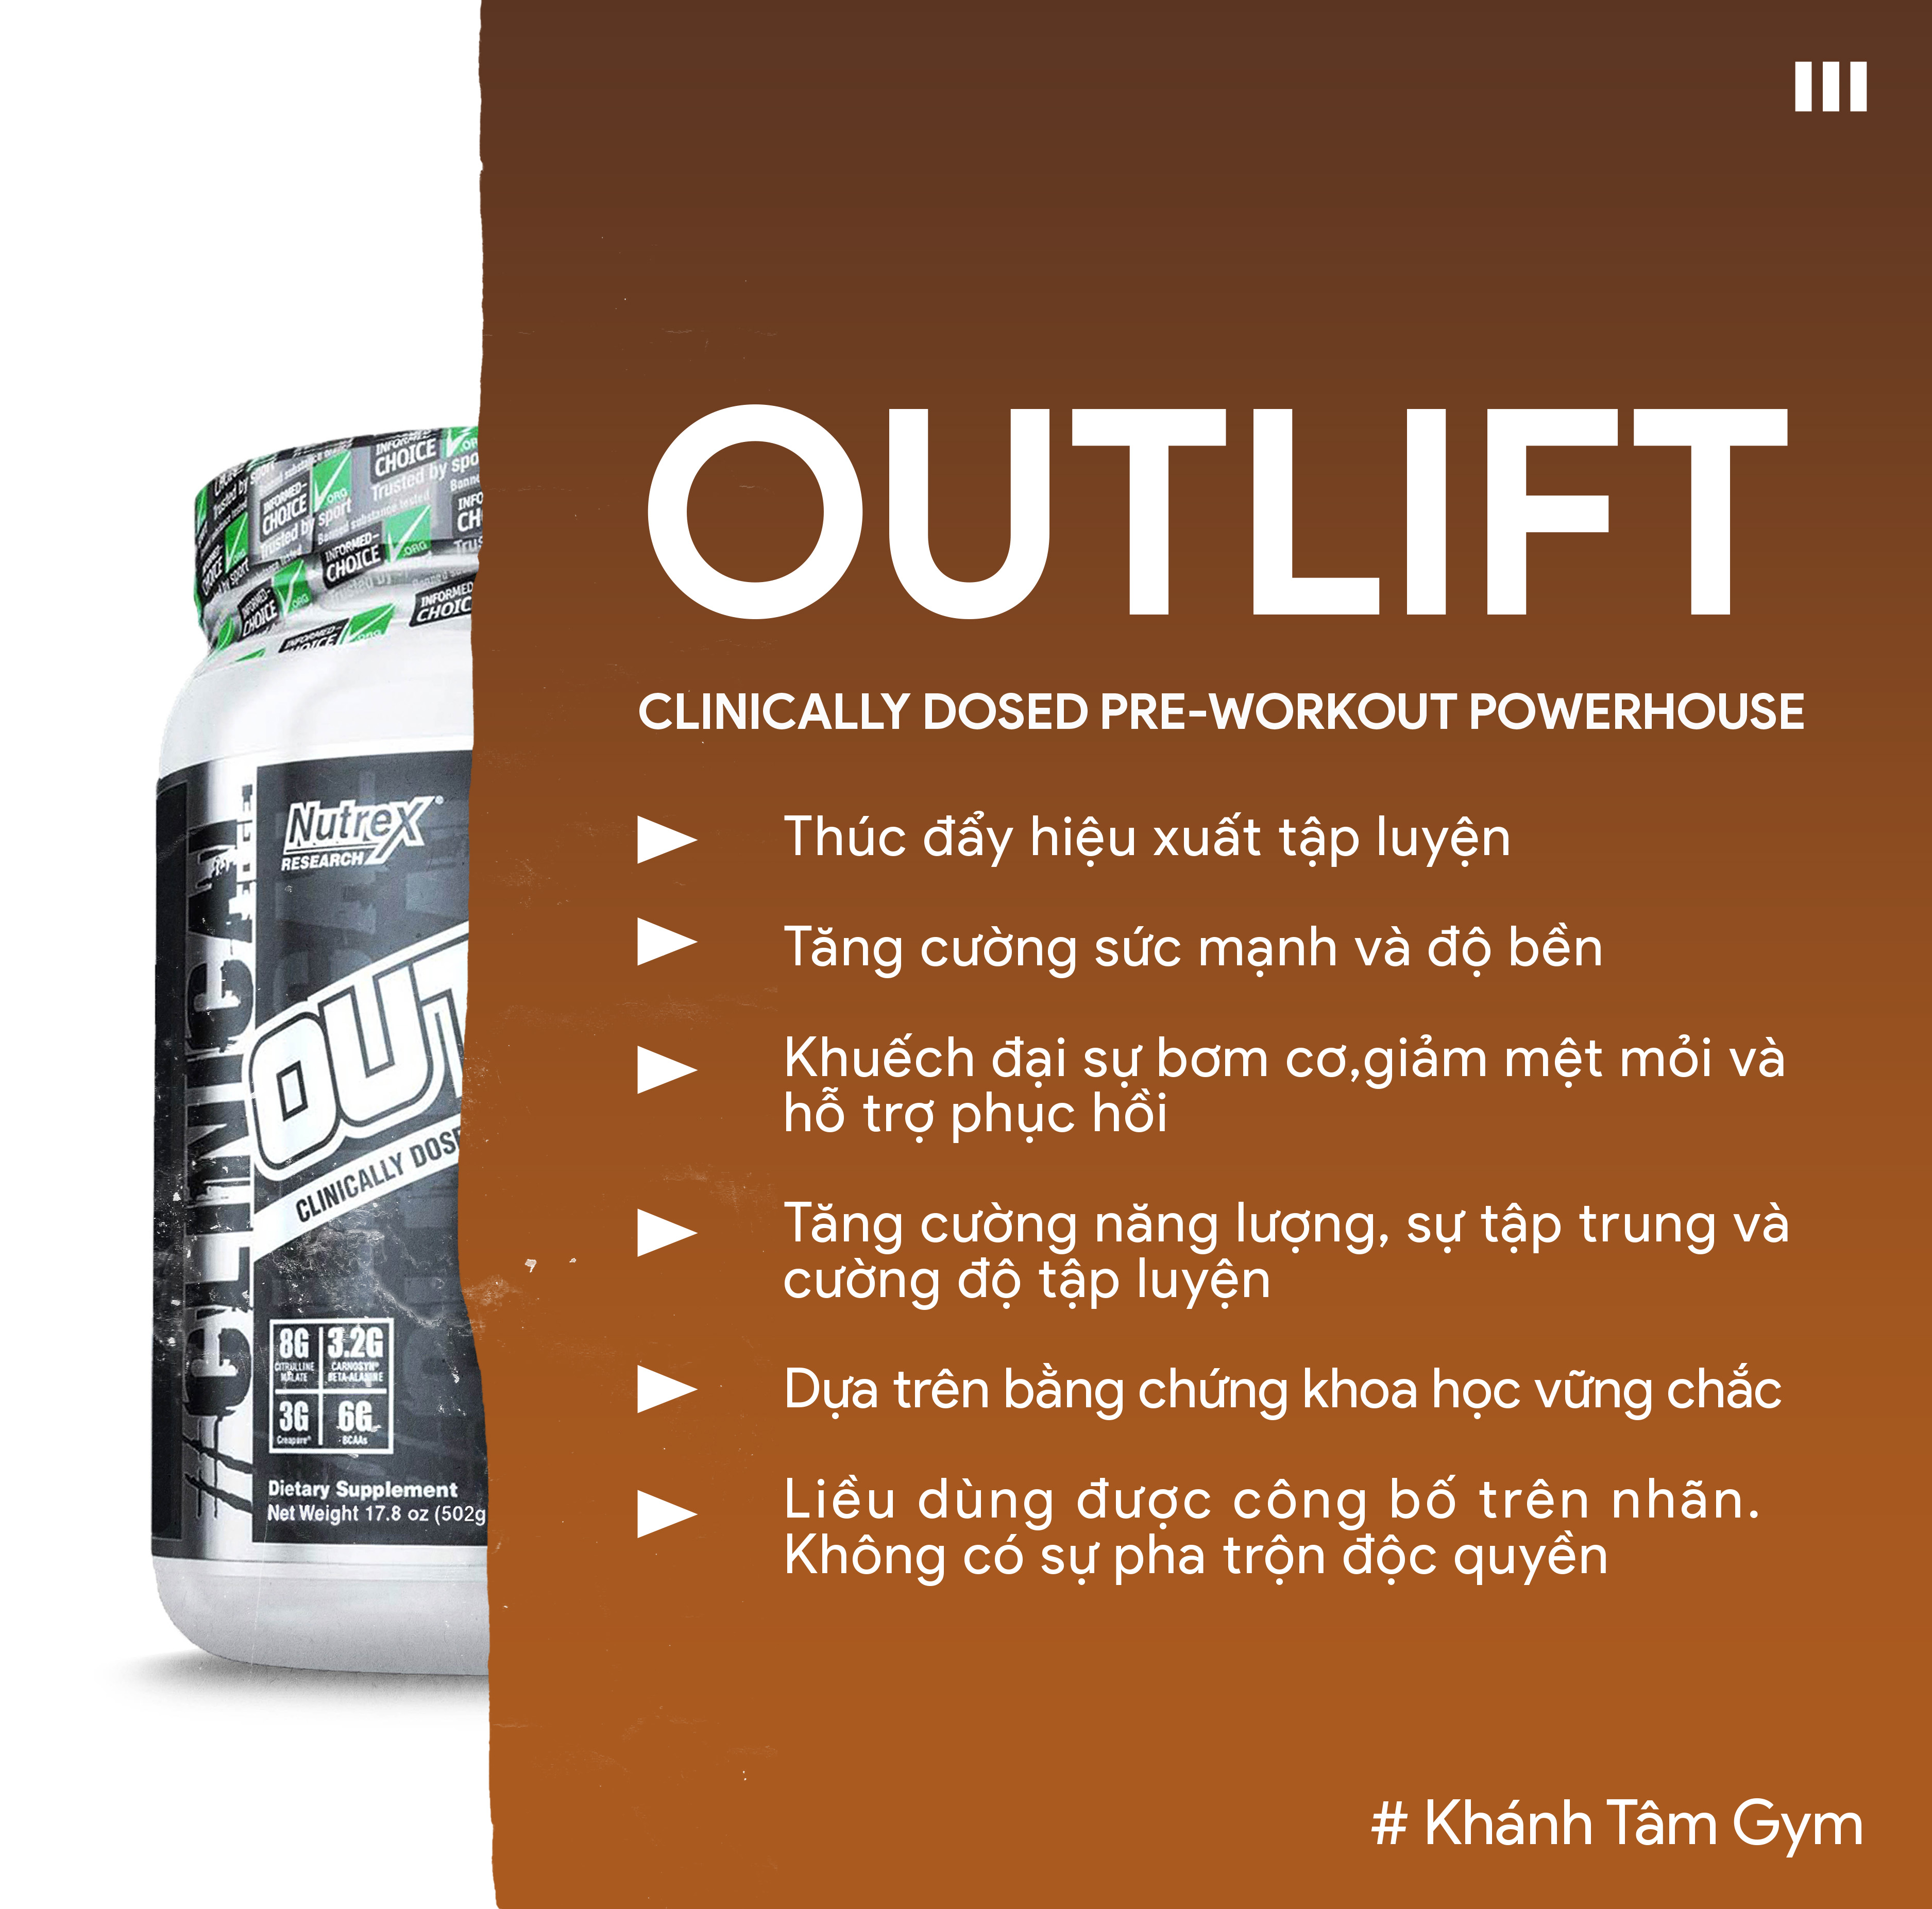 Tăng sức mạnh &amp; Sức bền - Pre-Workout Outlift từ Nuttrex - 20 Liều dùng - Hỗ trợ tập luyện, Tăng năng lượng trước tập, Citrulline, BCAA, Creatine, Beta-Alanine, Taurine